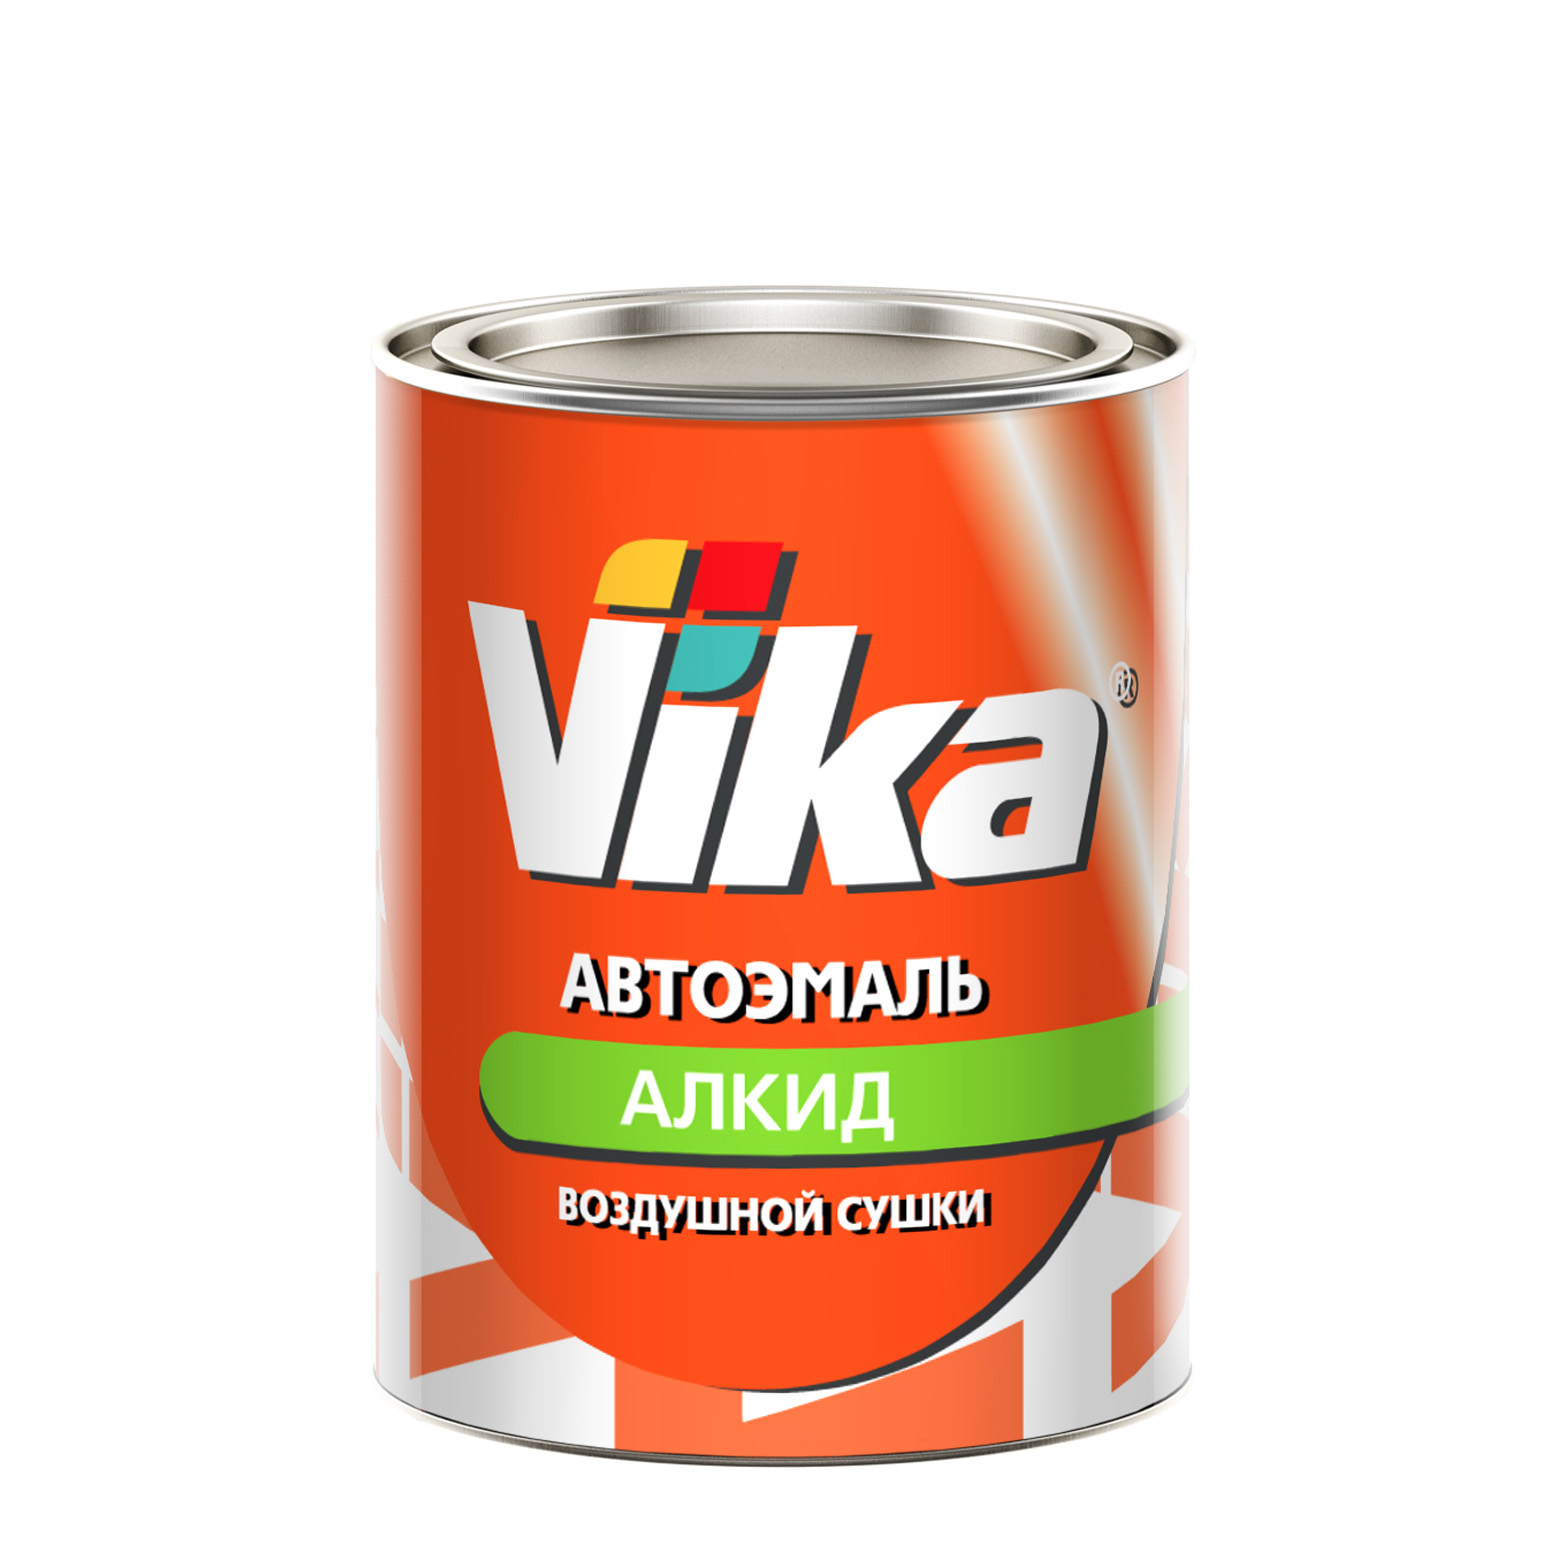 Фото 1 - Автоэмаль Vika-60, цвет 208 Охра Золотистая алкидная глянцевая естественной сушки - 0,8 кг.